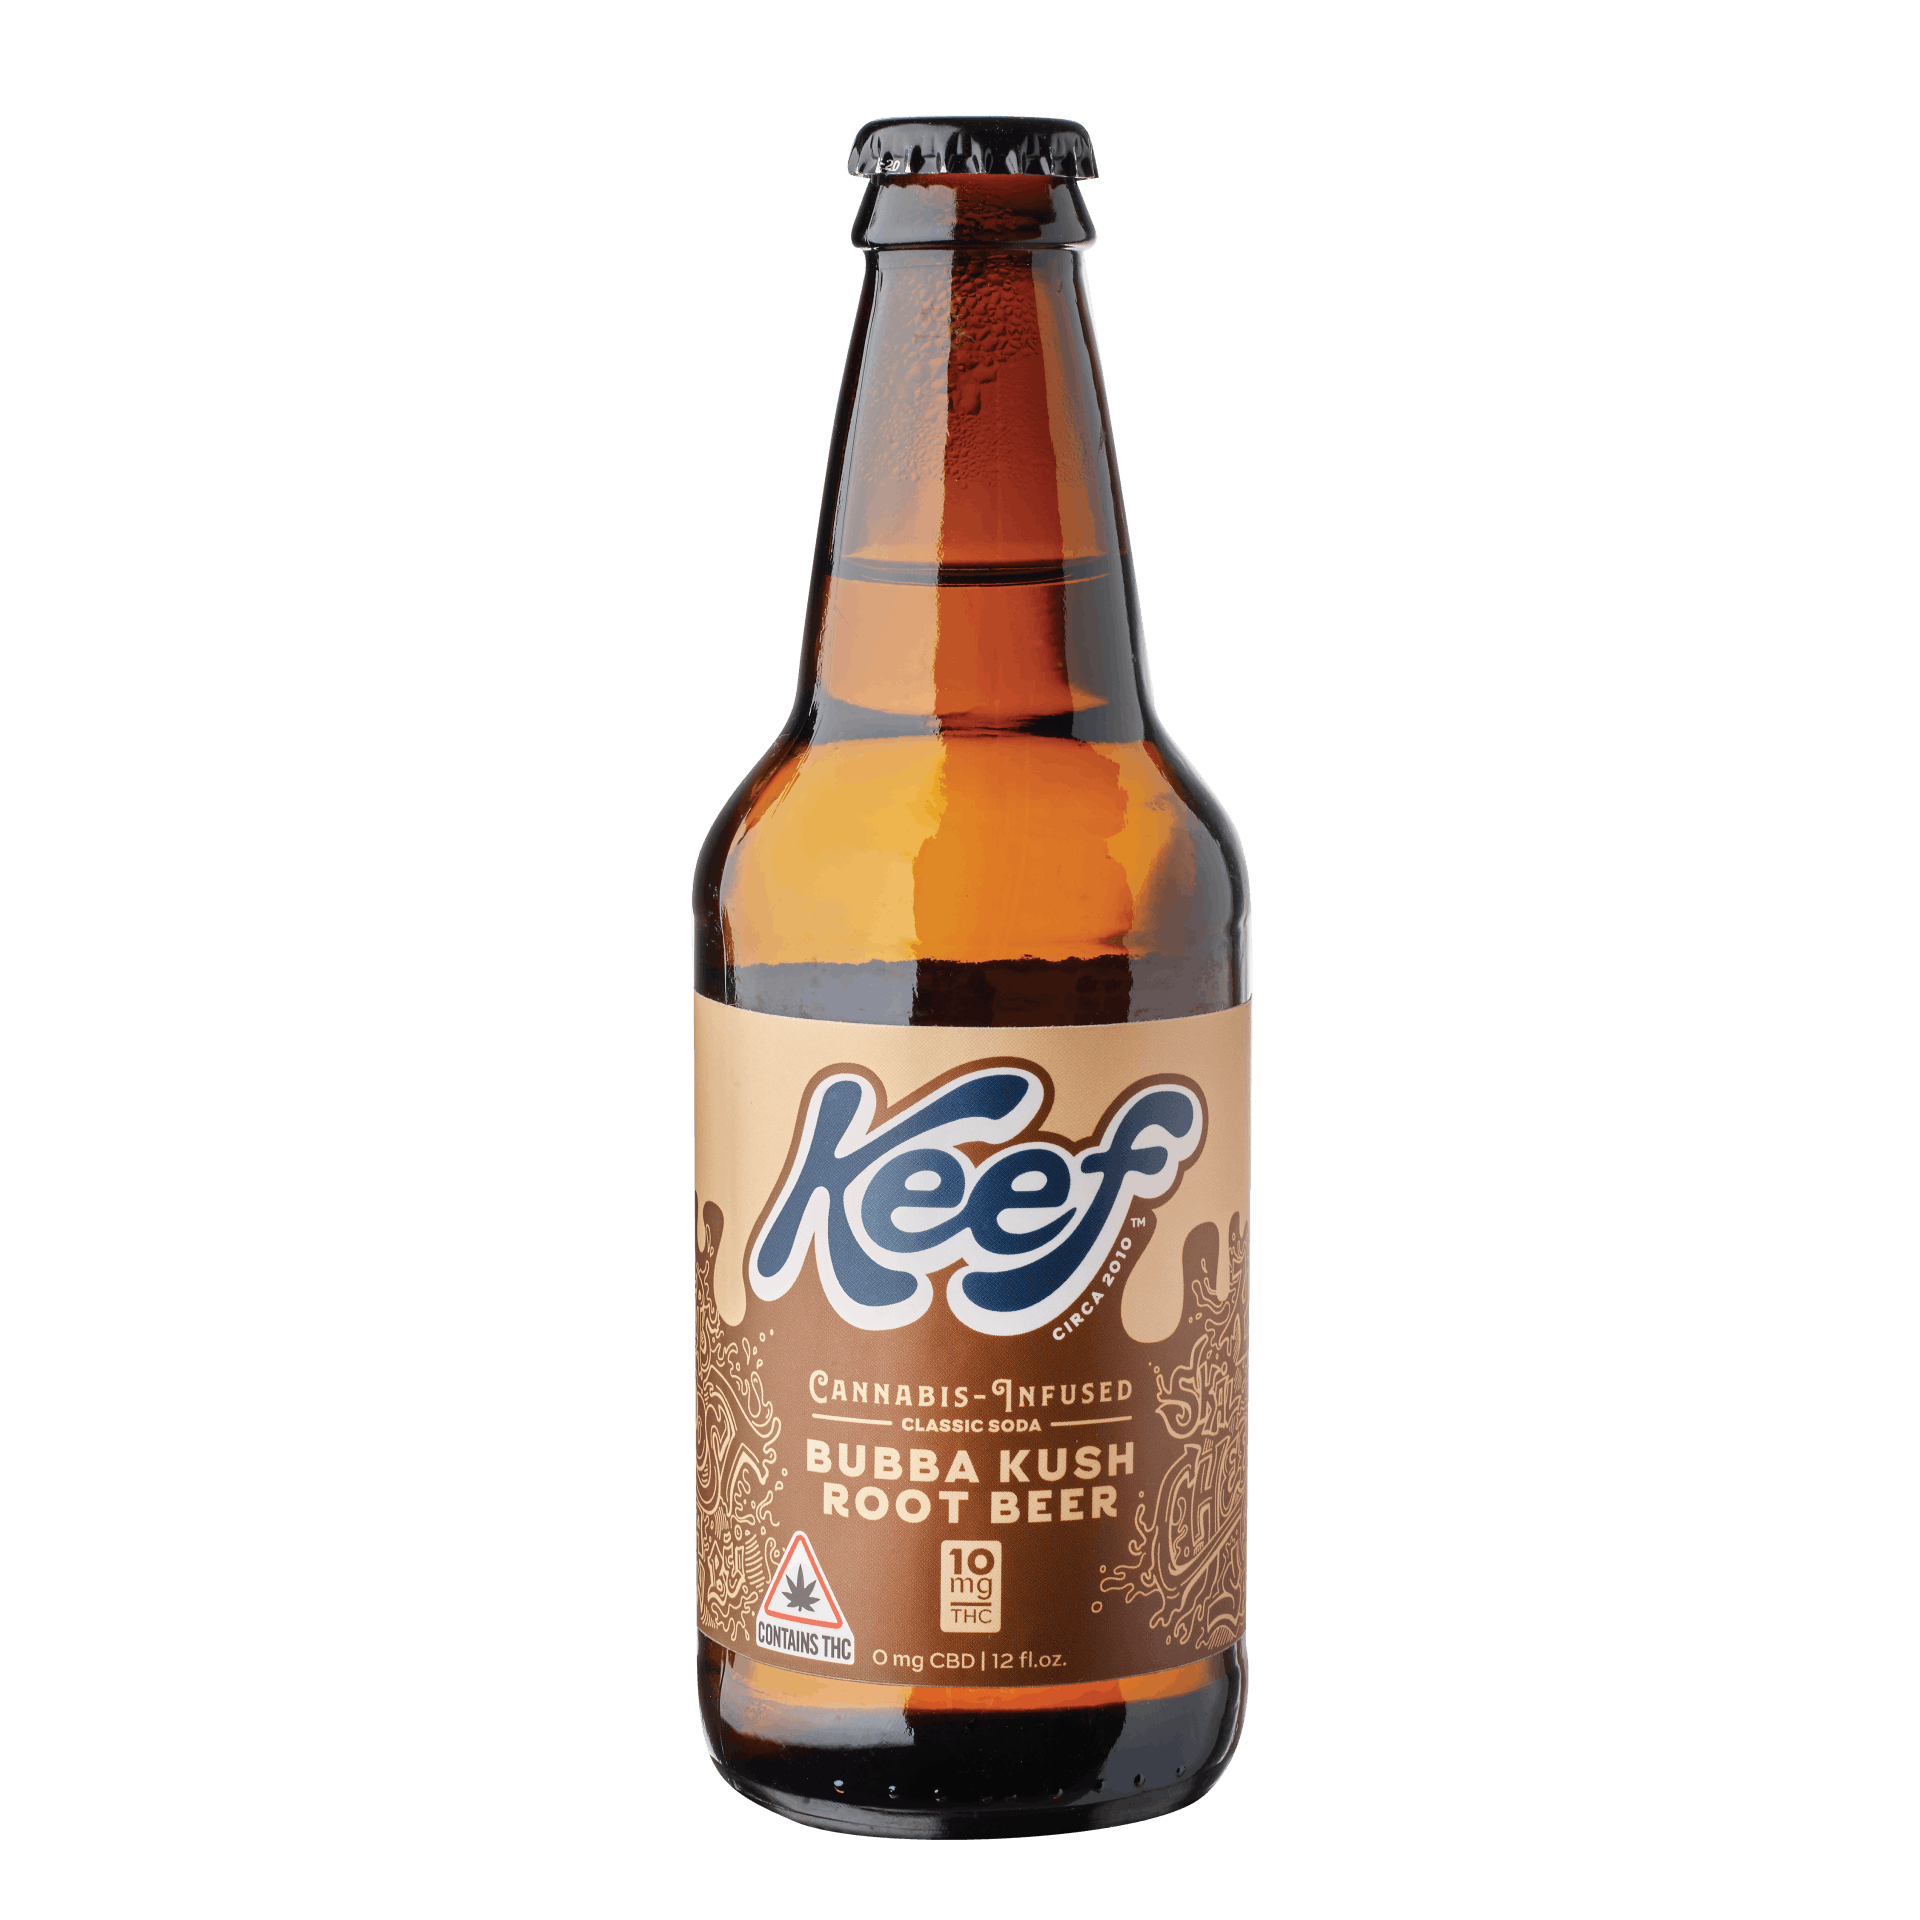 Keef Bubba Kush Root Beer